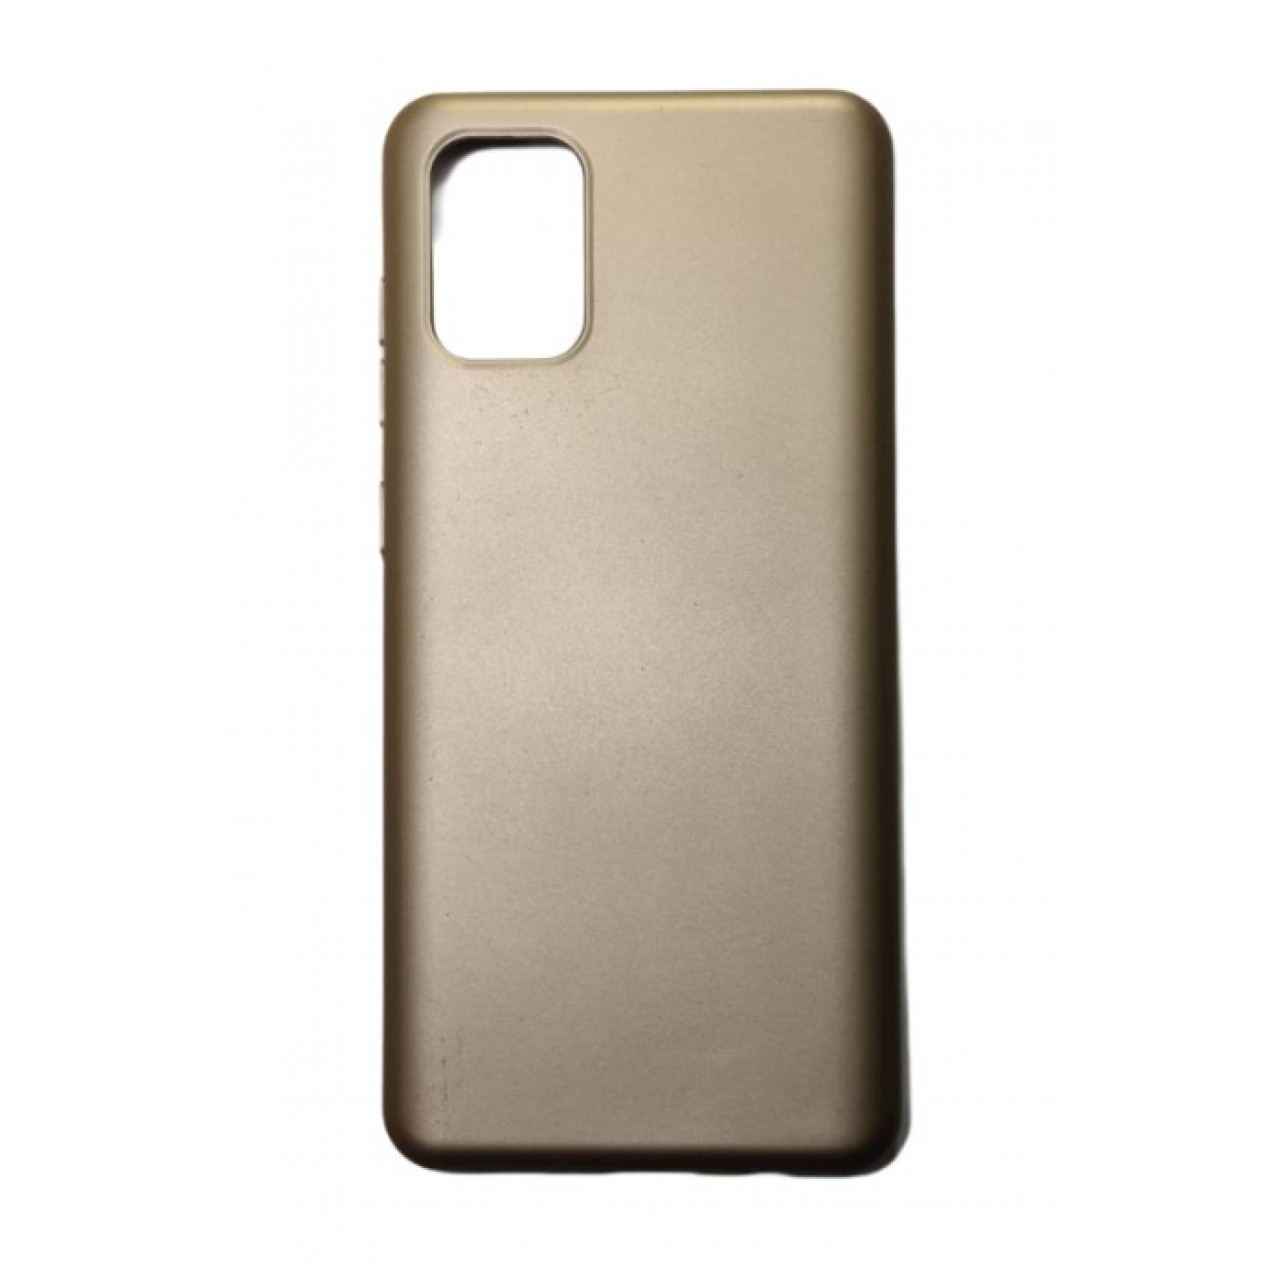 Θήκη Samsung Galaxy S20 PLUS Silicone soft-touch cover - 5092 - Χρυσό - ΟΕΜ